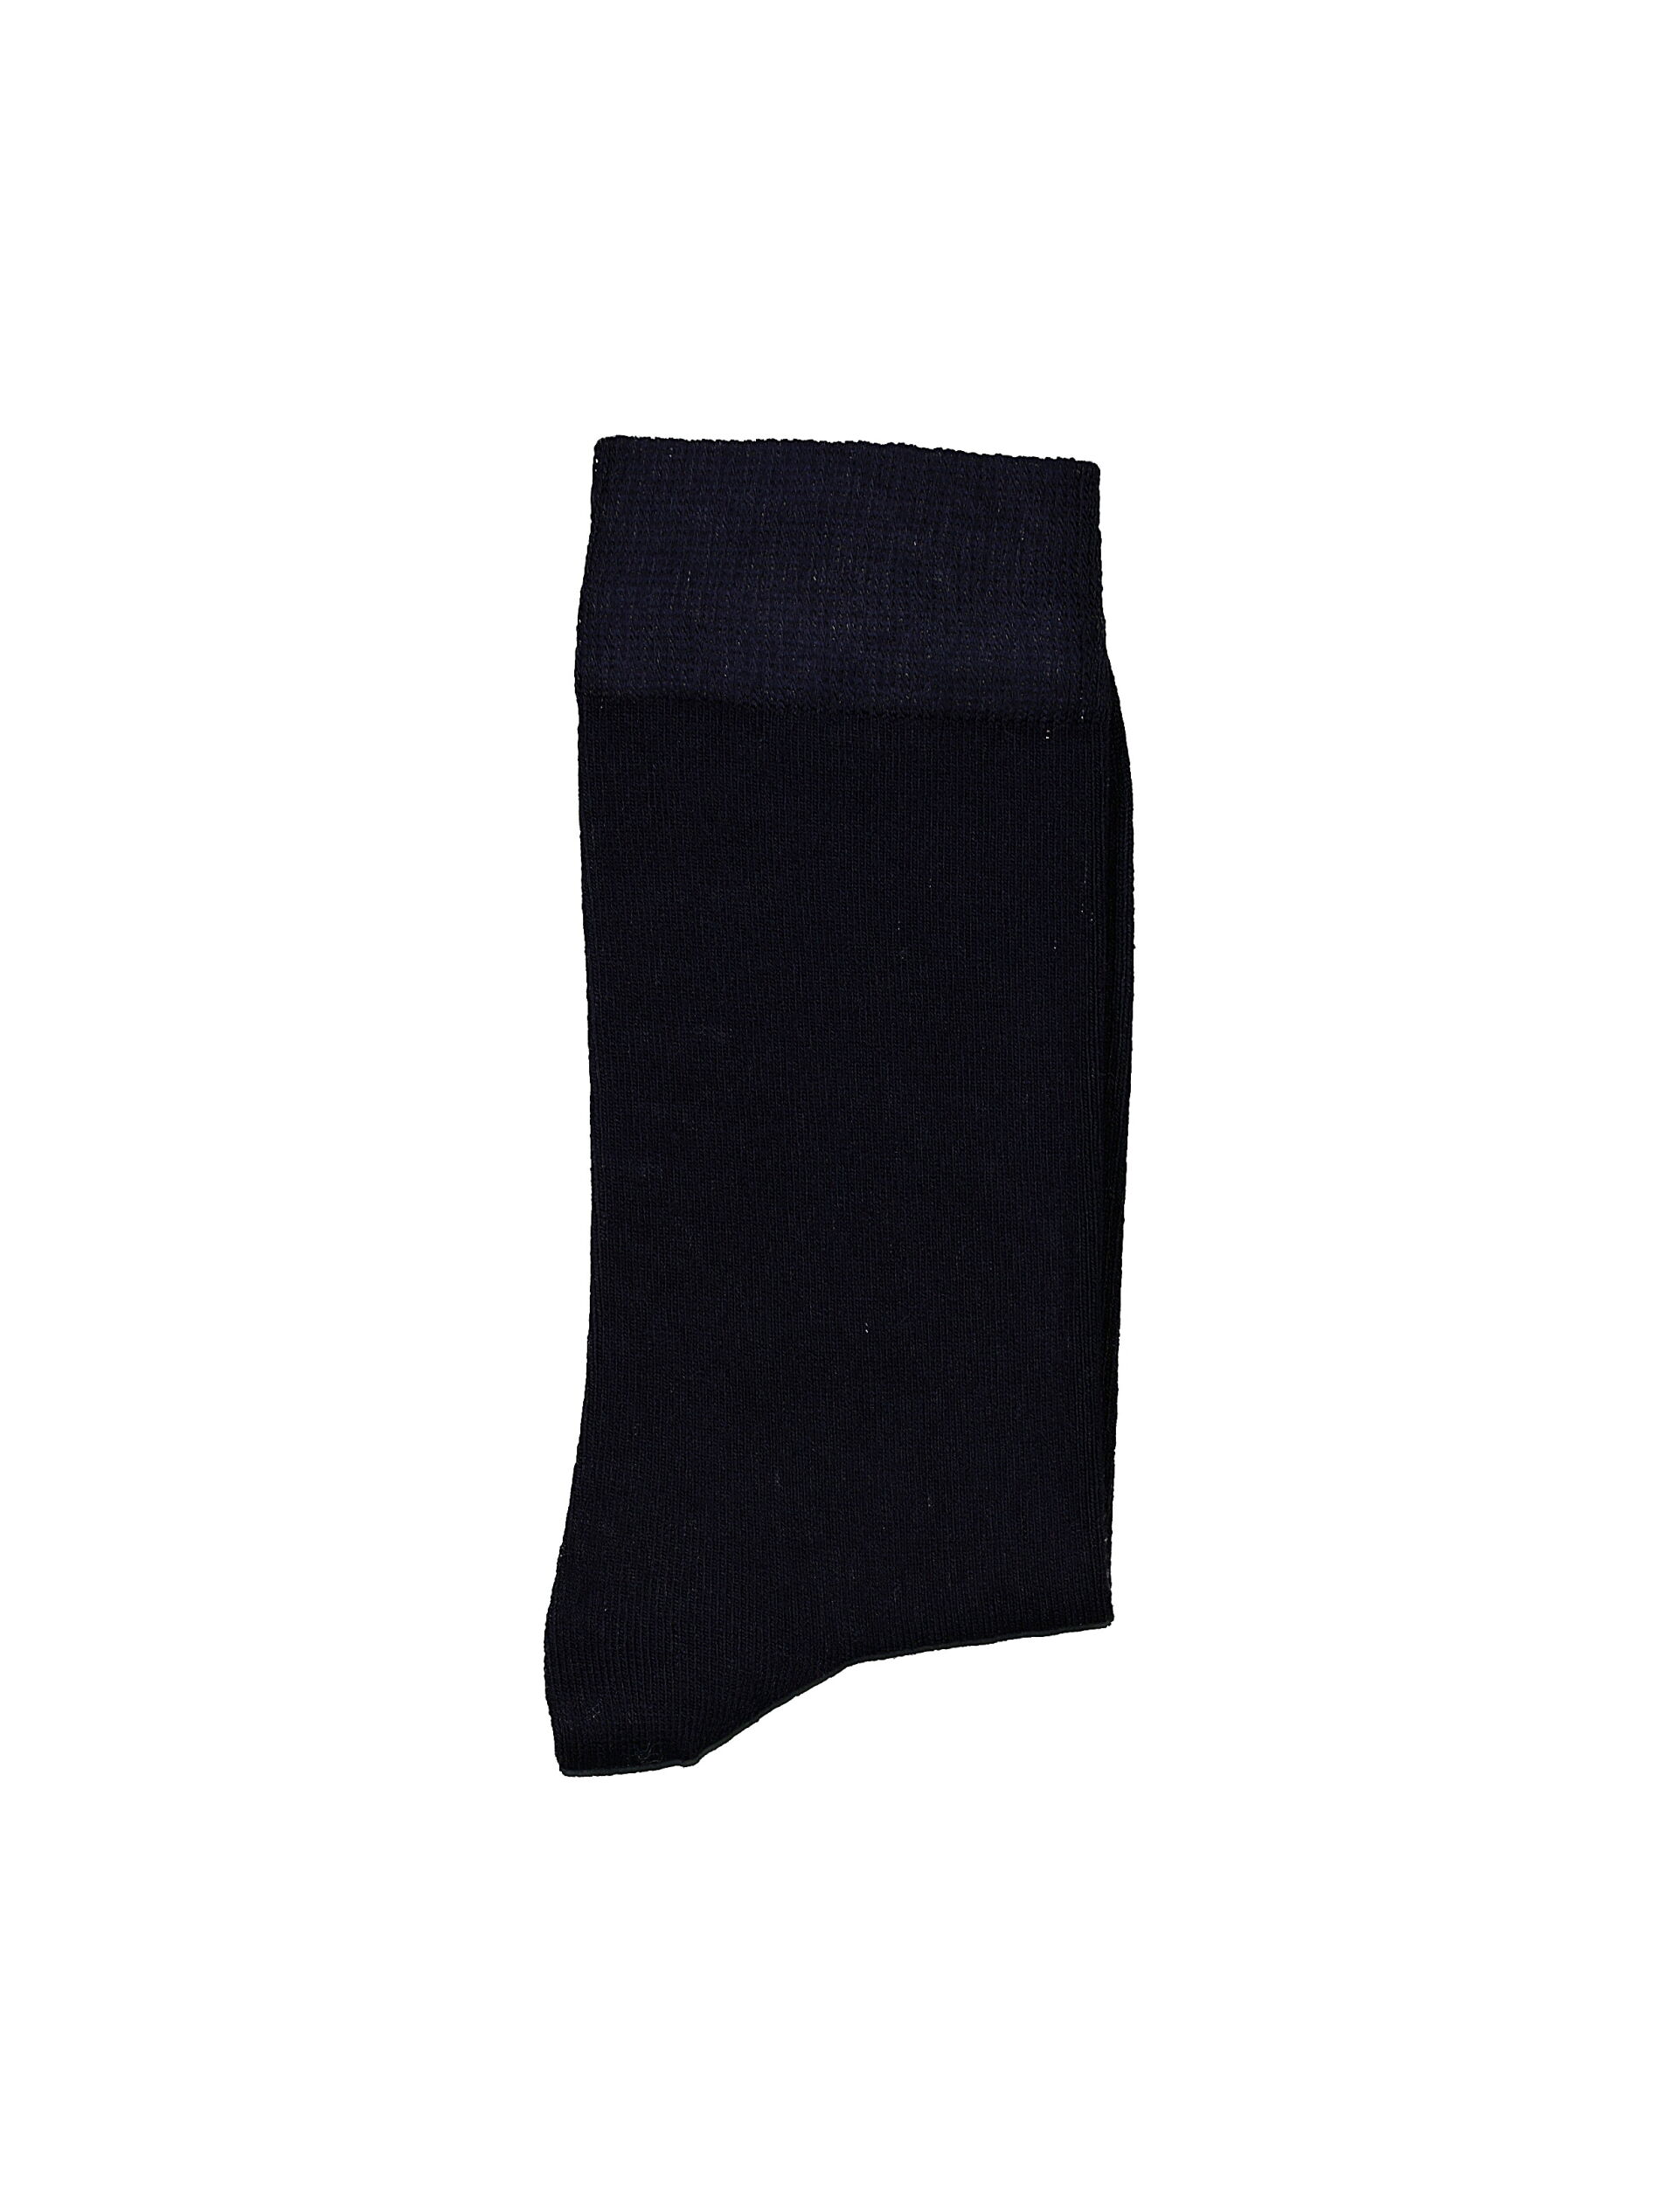 Socken 30-991050